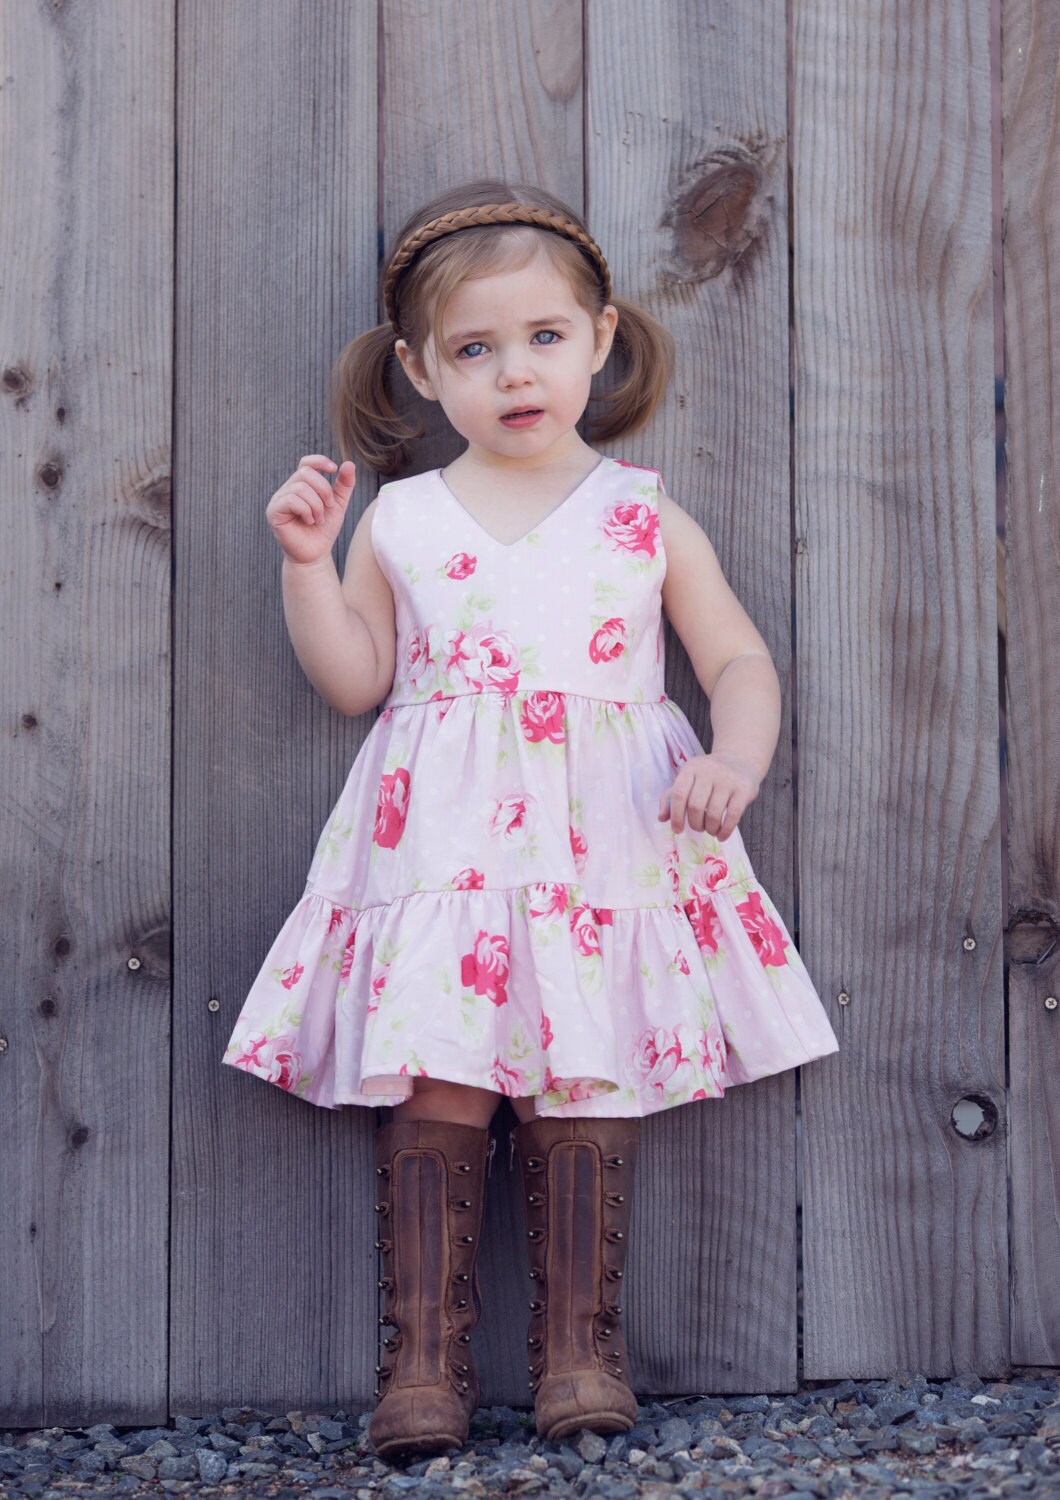 Girls Ruffle Dress / Girls Floral Dress / Toddler Floral Dress